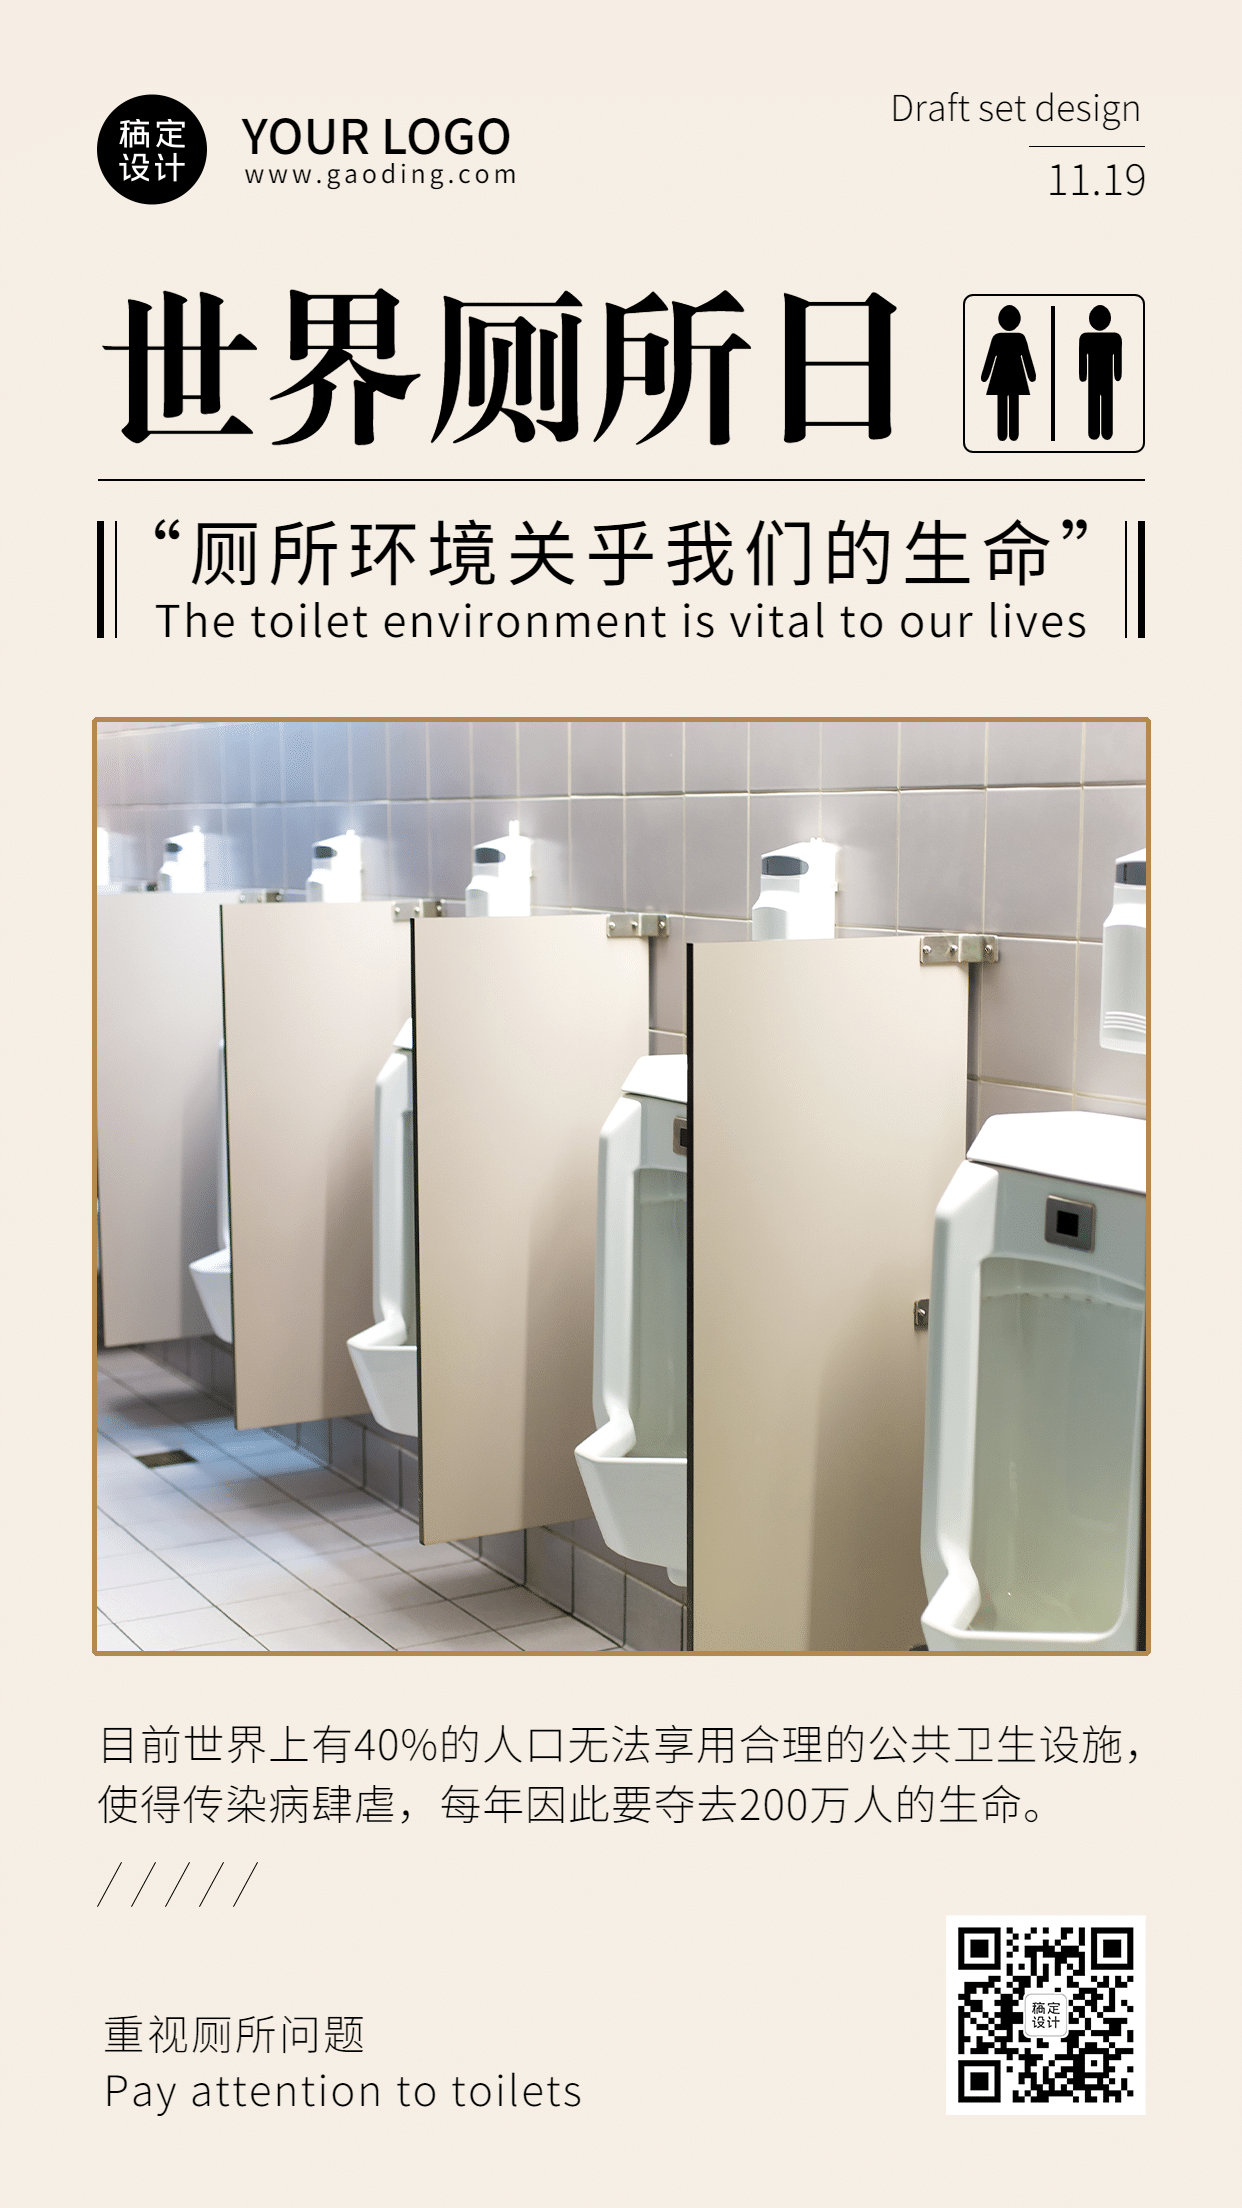 世界厕所日文明如厕公共卫生宣传实景手机海报预览效果